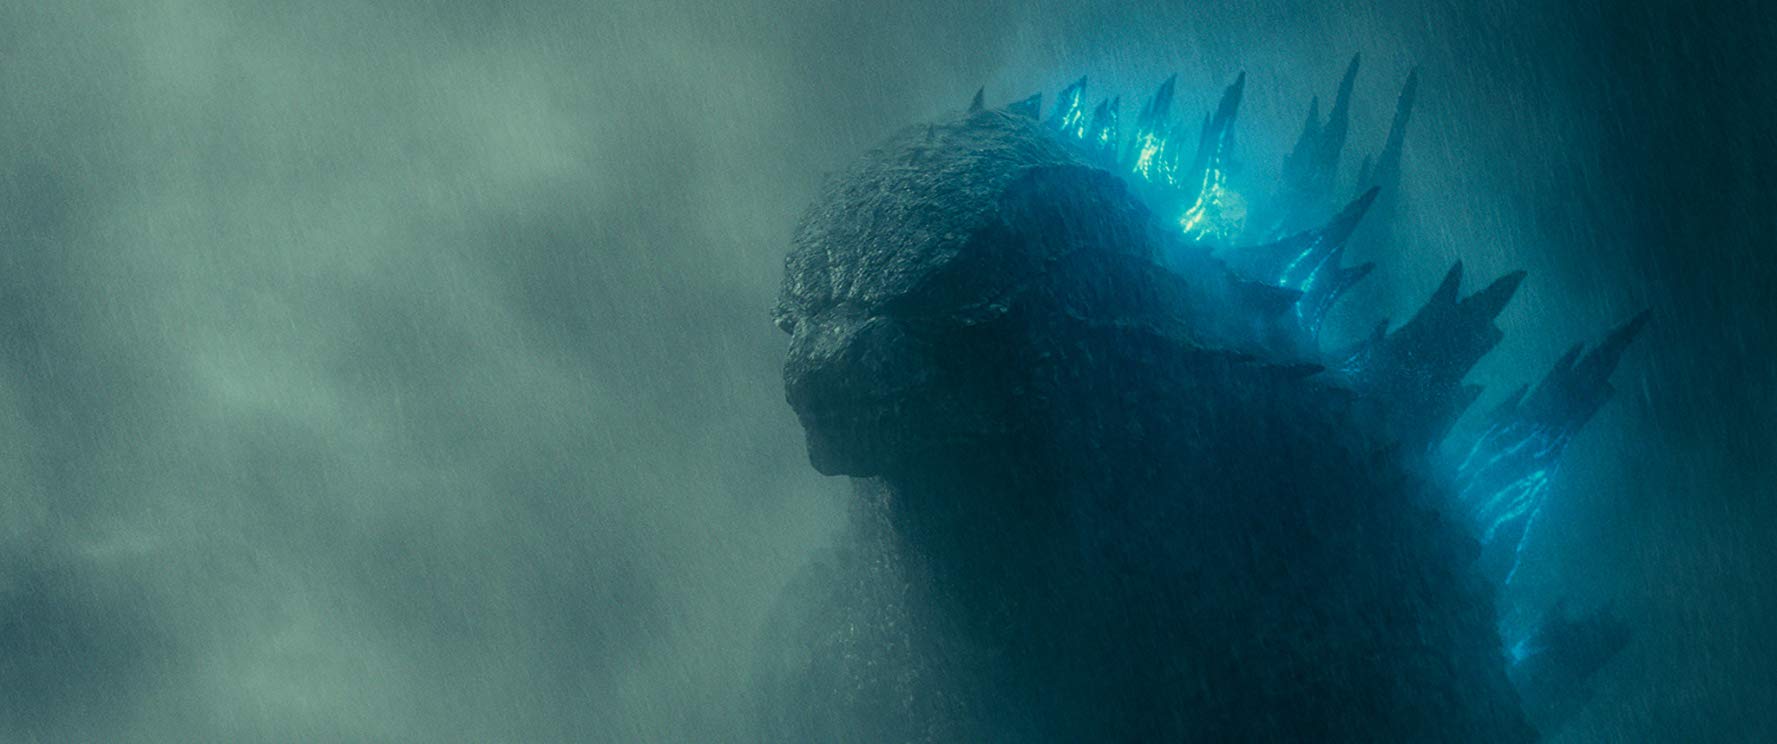 Godzilla, Rey de los Monstruos (2019)